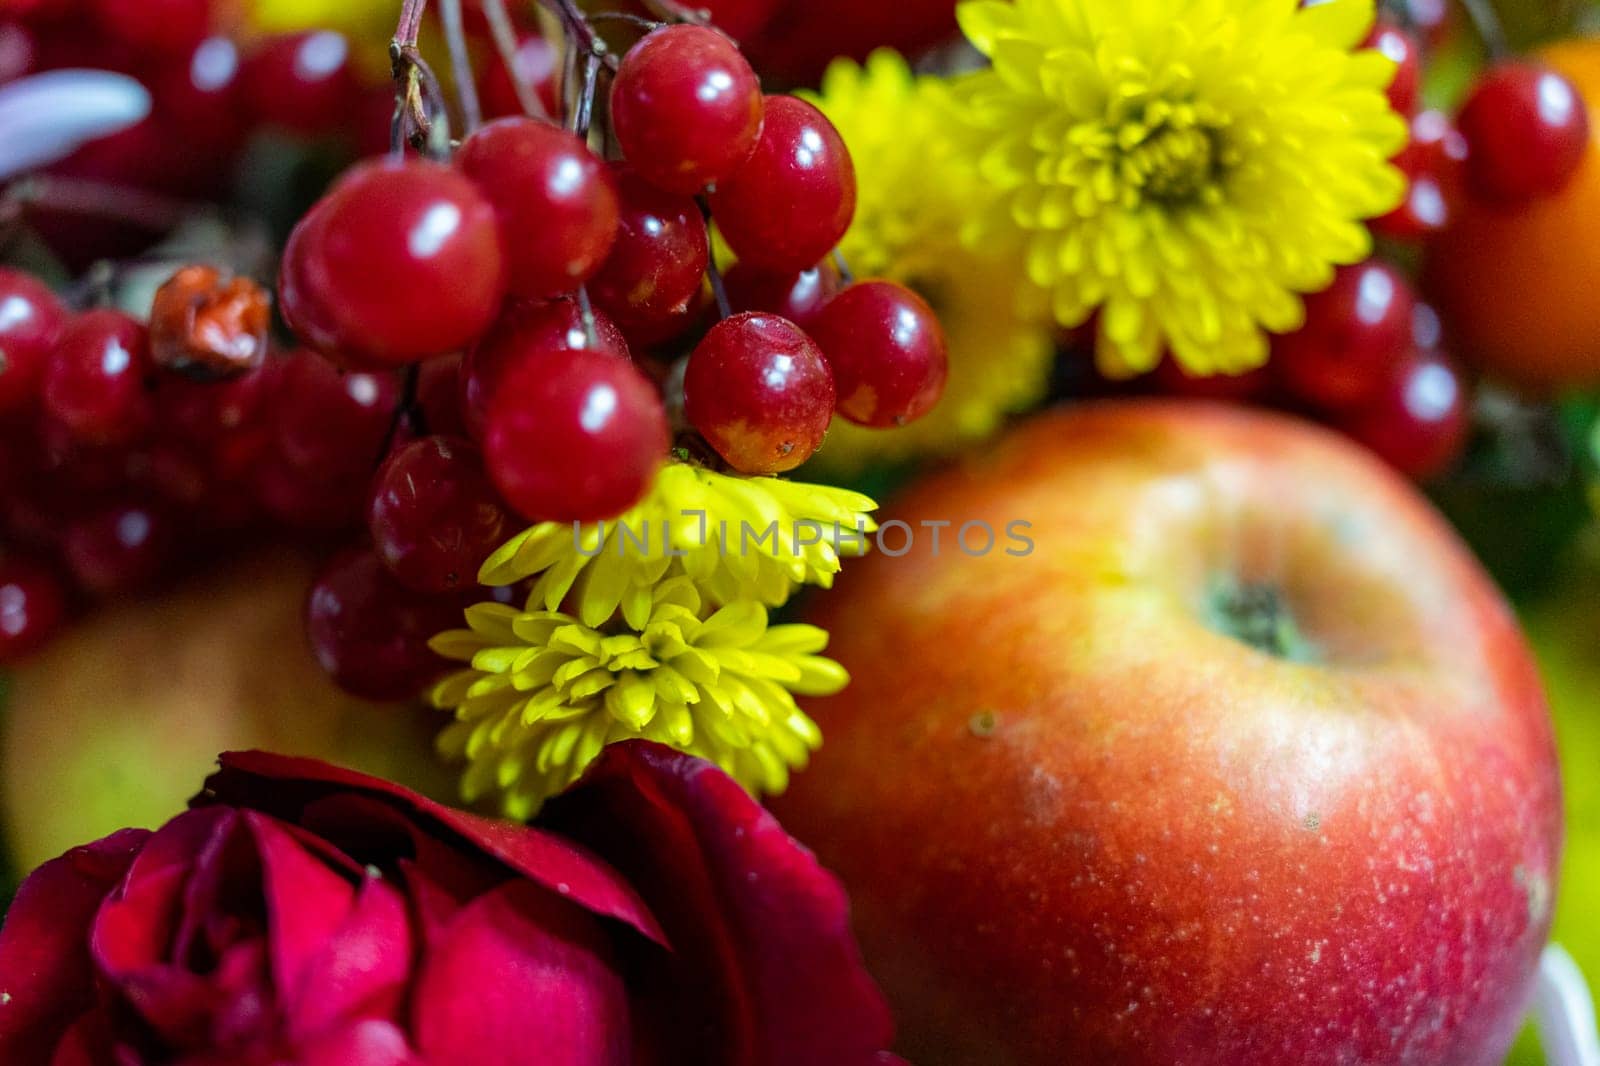 Close-up of an apple-flower arrangement by Serhii_Voroshchuk